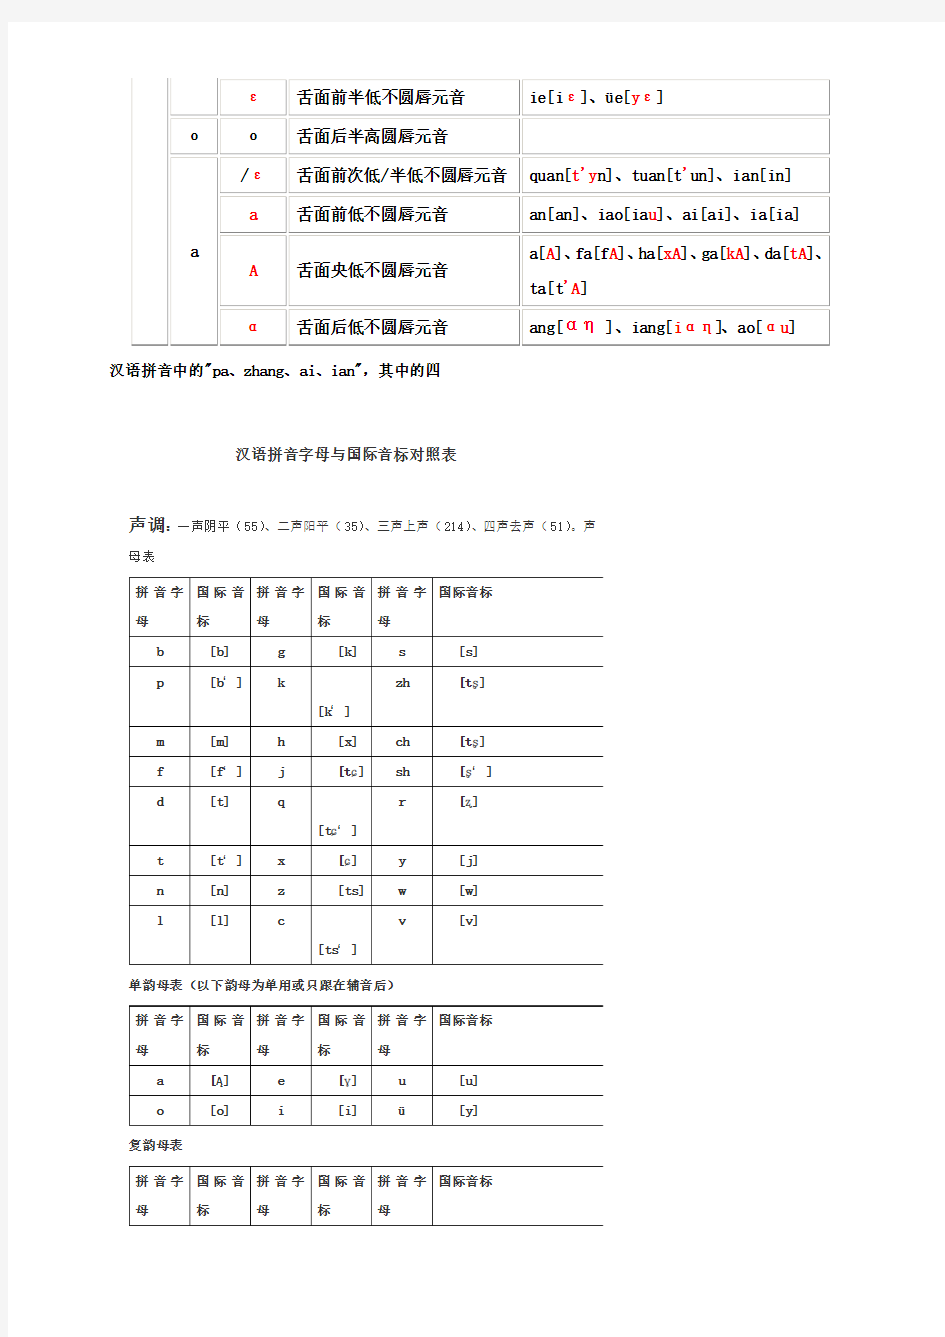 国际音标与汉语拼音对照表